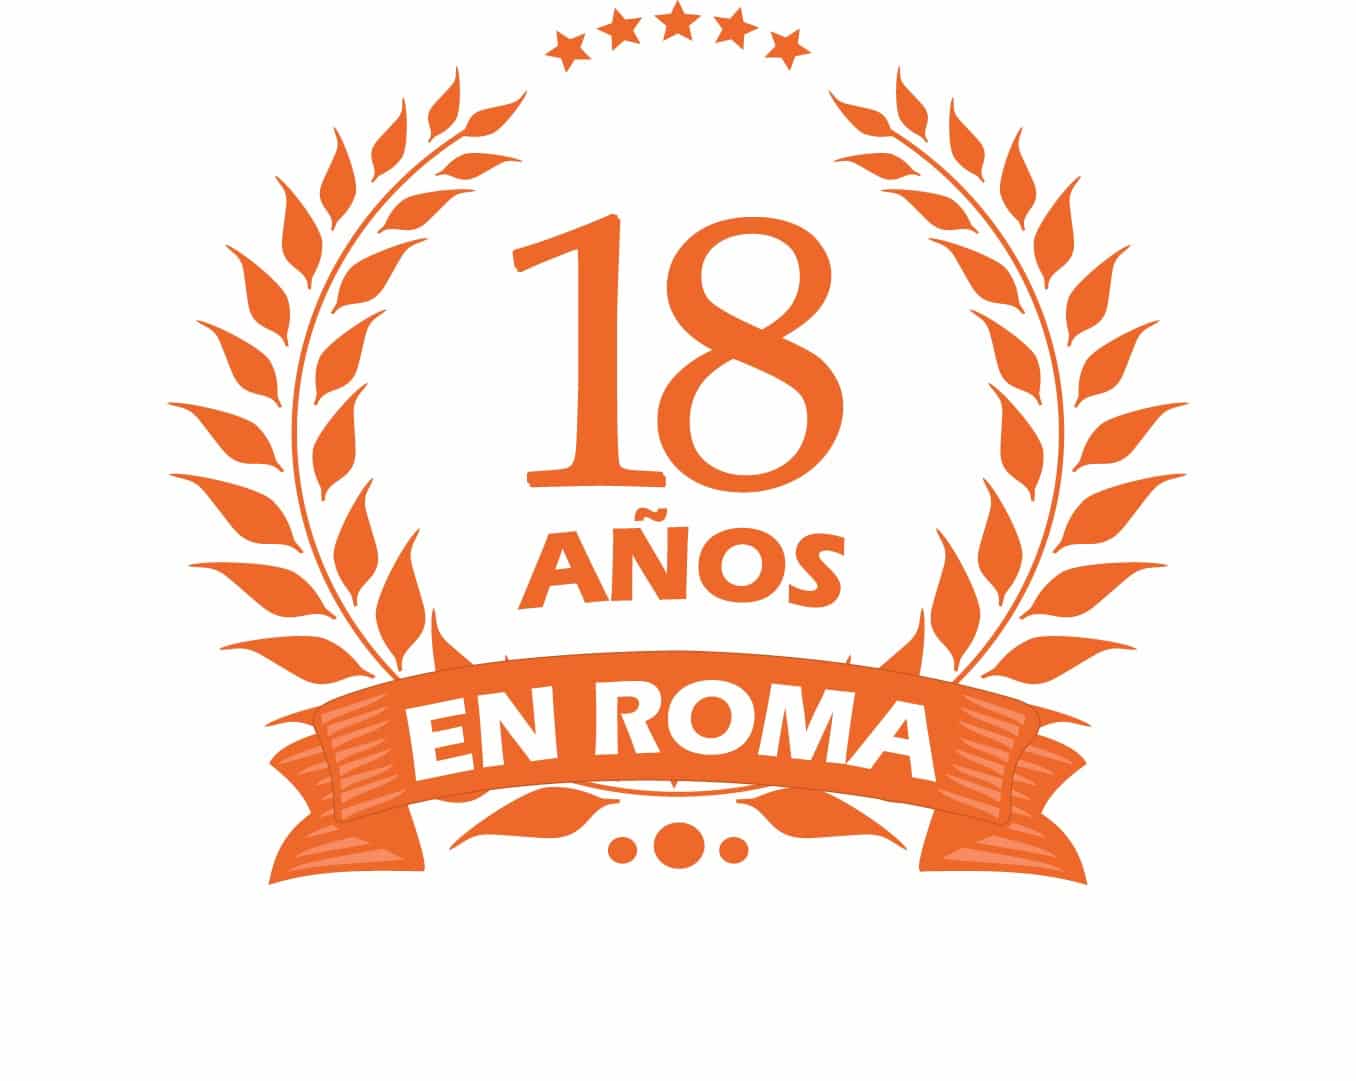 18 años en roma